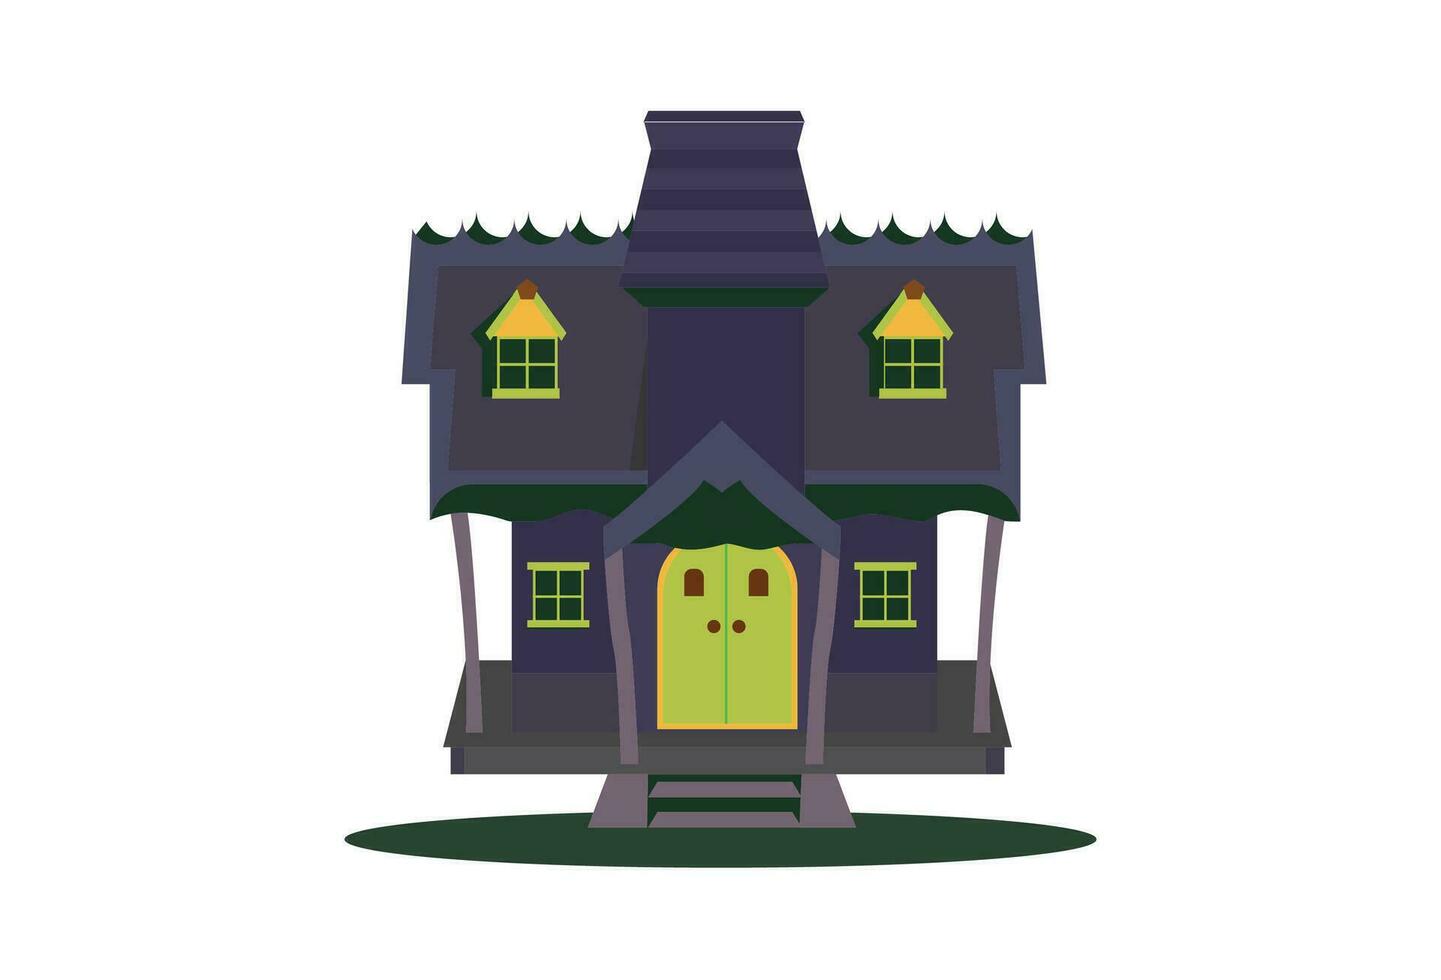 verfolgt Haus, das Vektor Illustration zeigt ein Halloween-Themen Haus, präsentieren ein unheimlich und gespenstisch Ambiente. das verfolgt alt Haus ist porträtiert mit chillen Einzelheiten Das hervorrufen ein Sinn von Angst